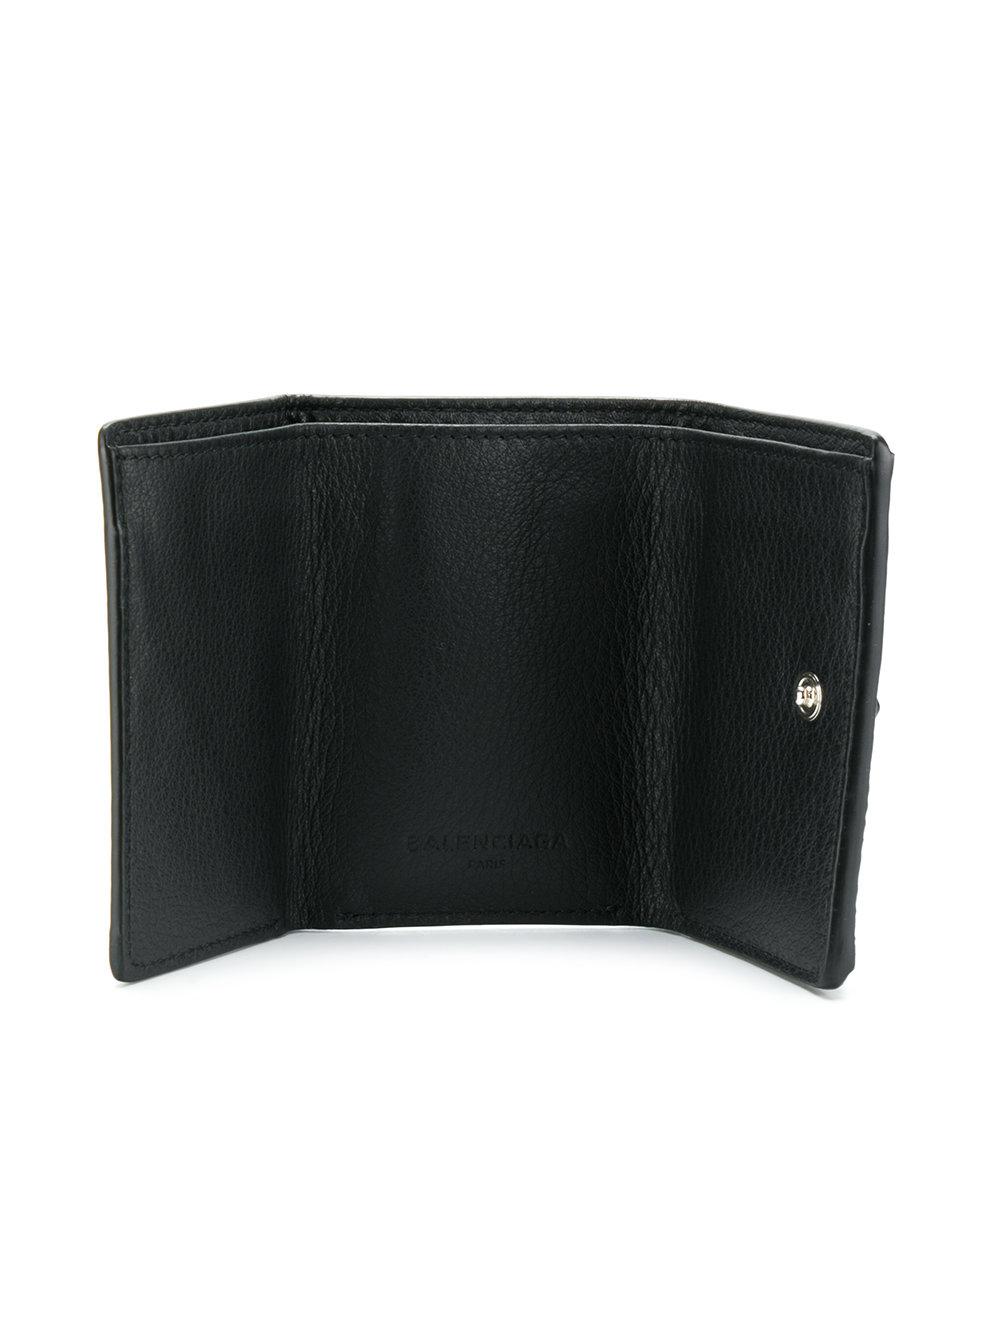 balenciaga mini wallet black